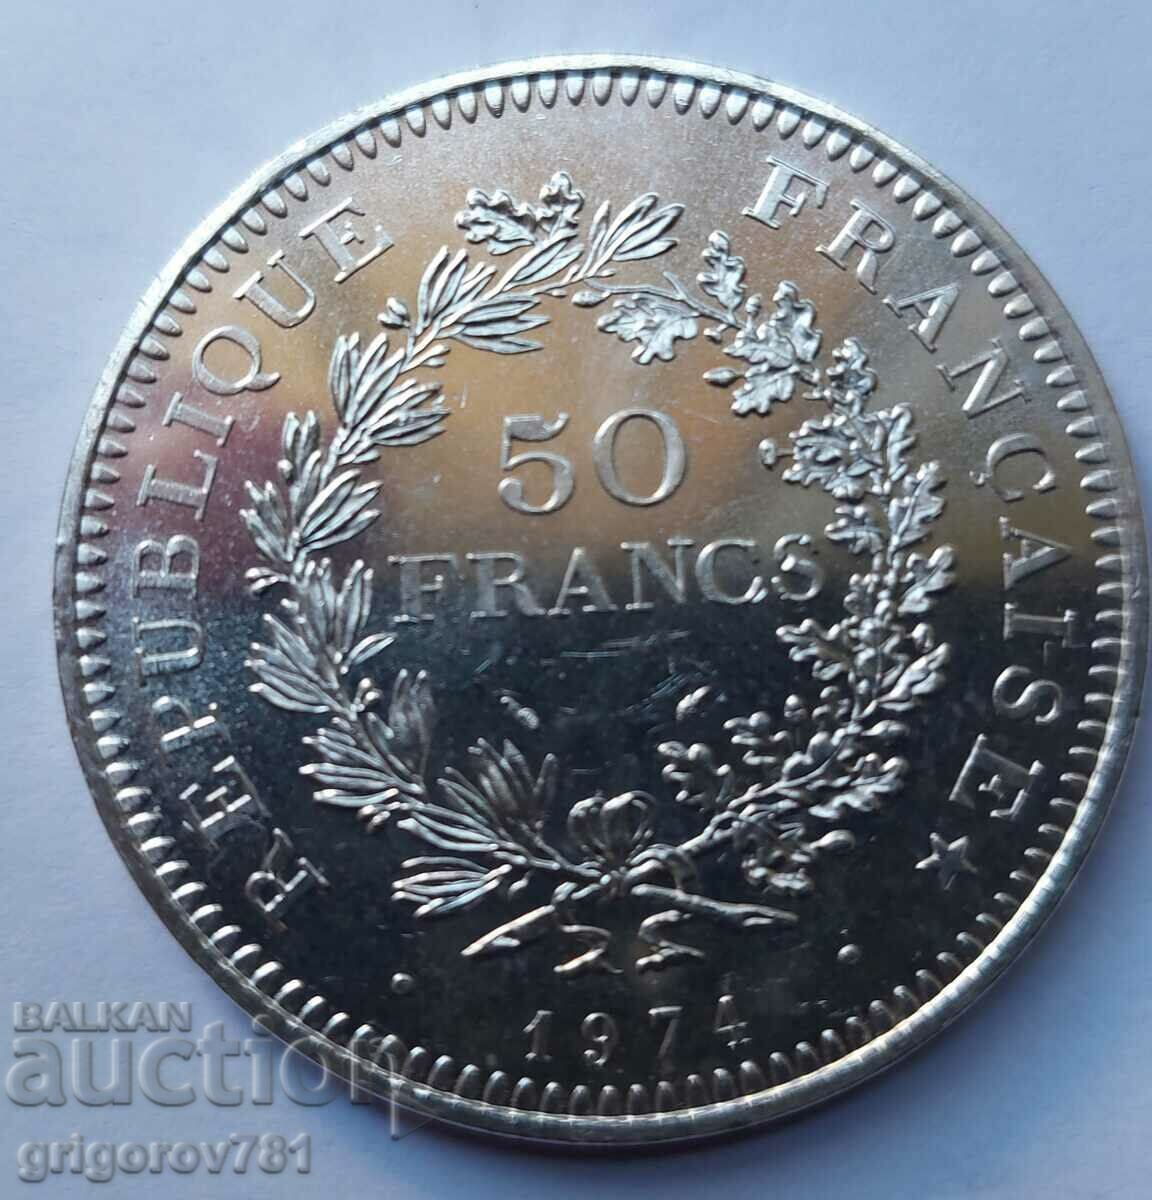 50 Franci Argint Franta 1974 - Moneda de argint #26